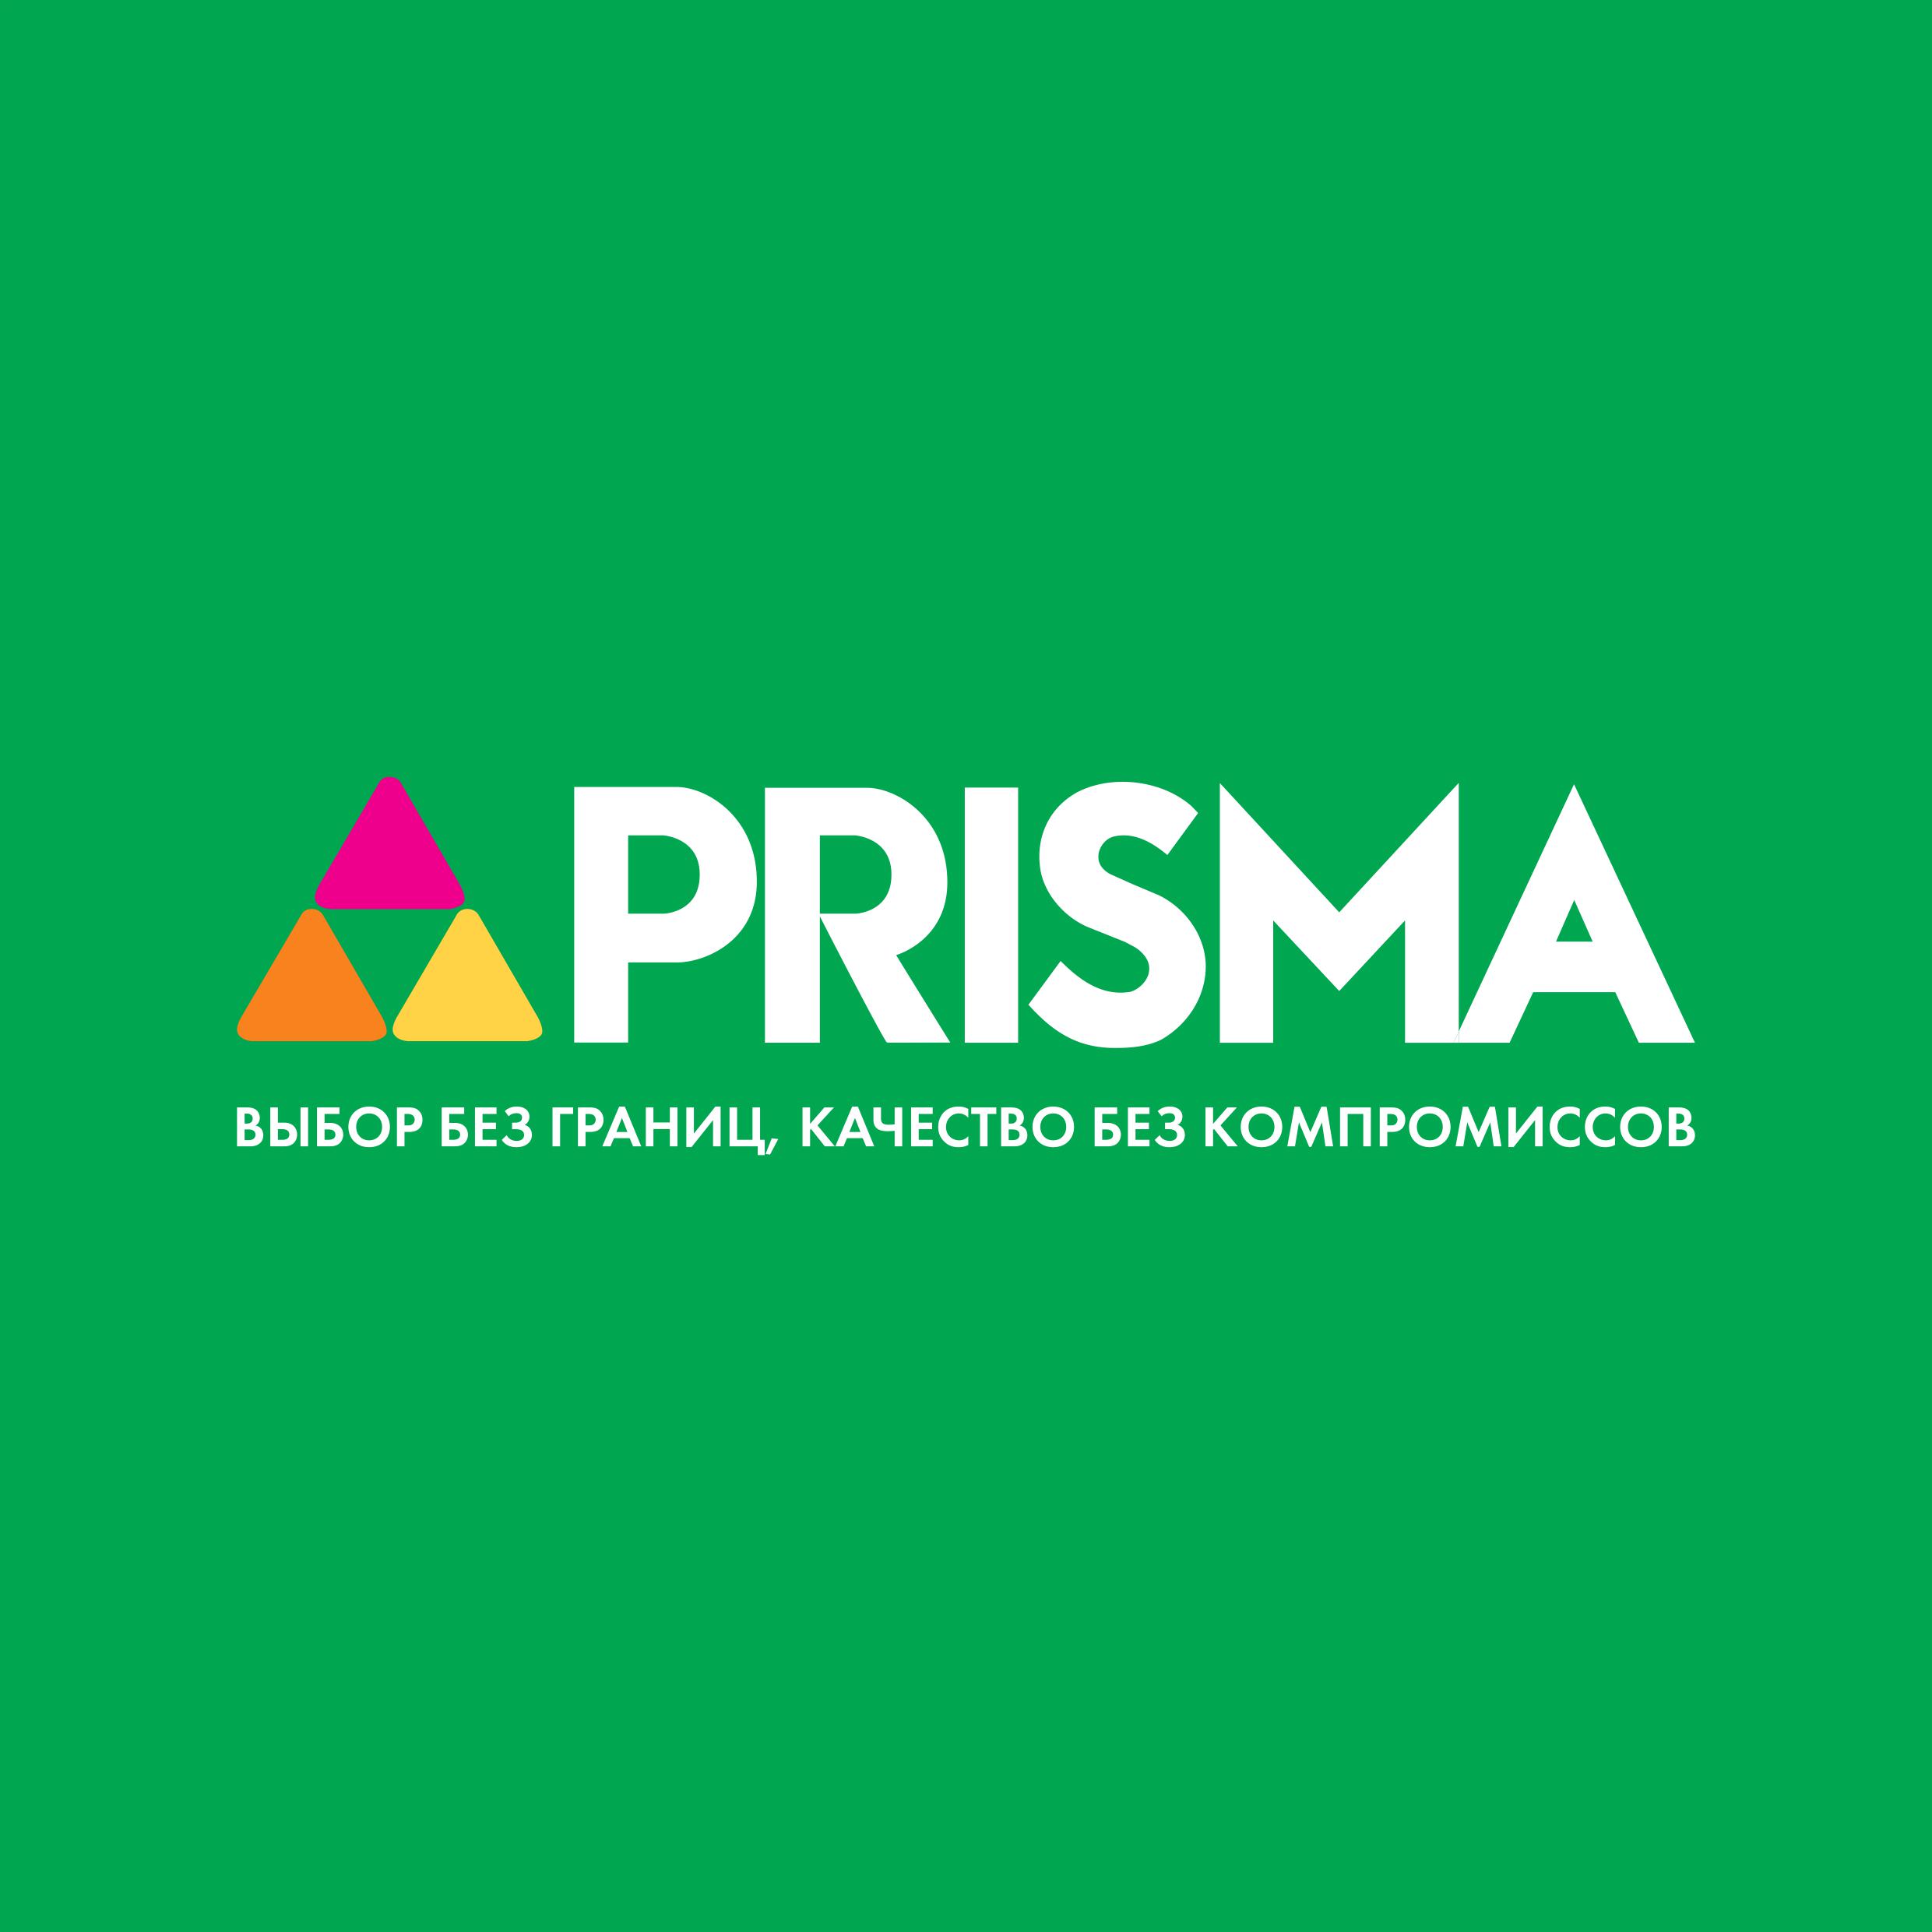 PRISMA,  сеть финских супермаркетов